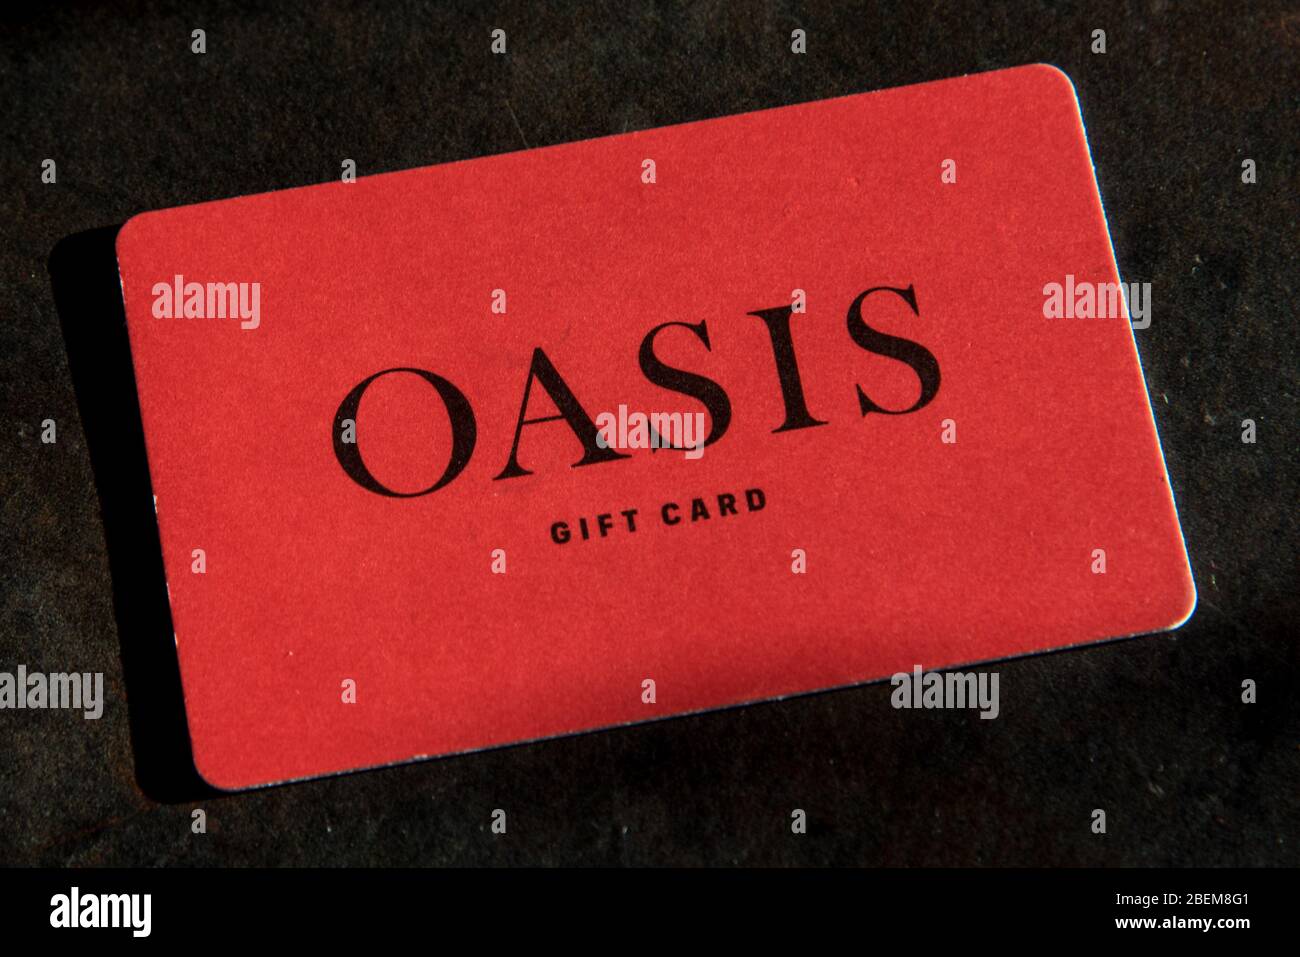 Le détaillant britannique Oasis est près de se rendre à l'administration, laissant les détenteurs de cartes-cadeaux ne pas savoir s'ils perdront la valeur de leur carte Banque D'Images